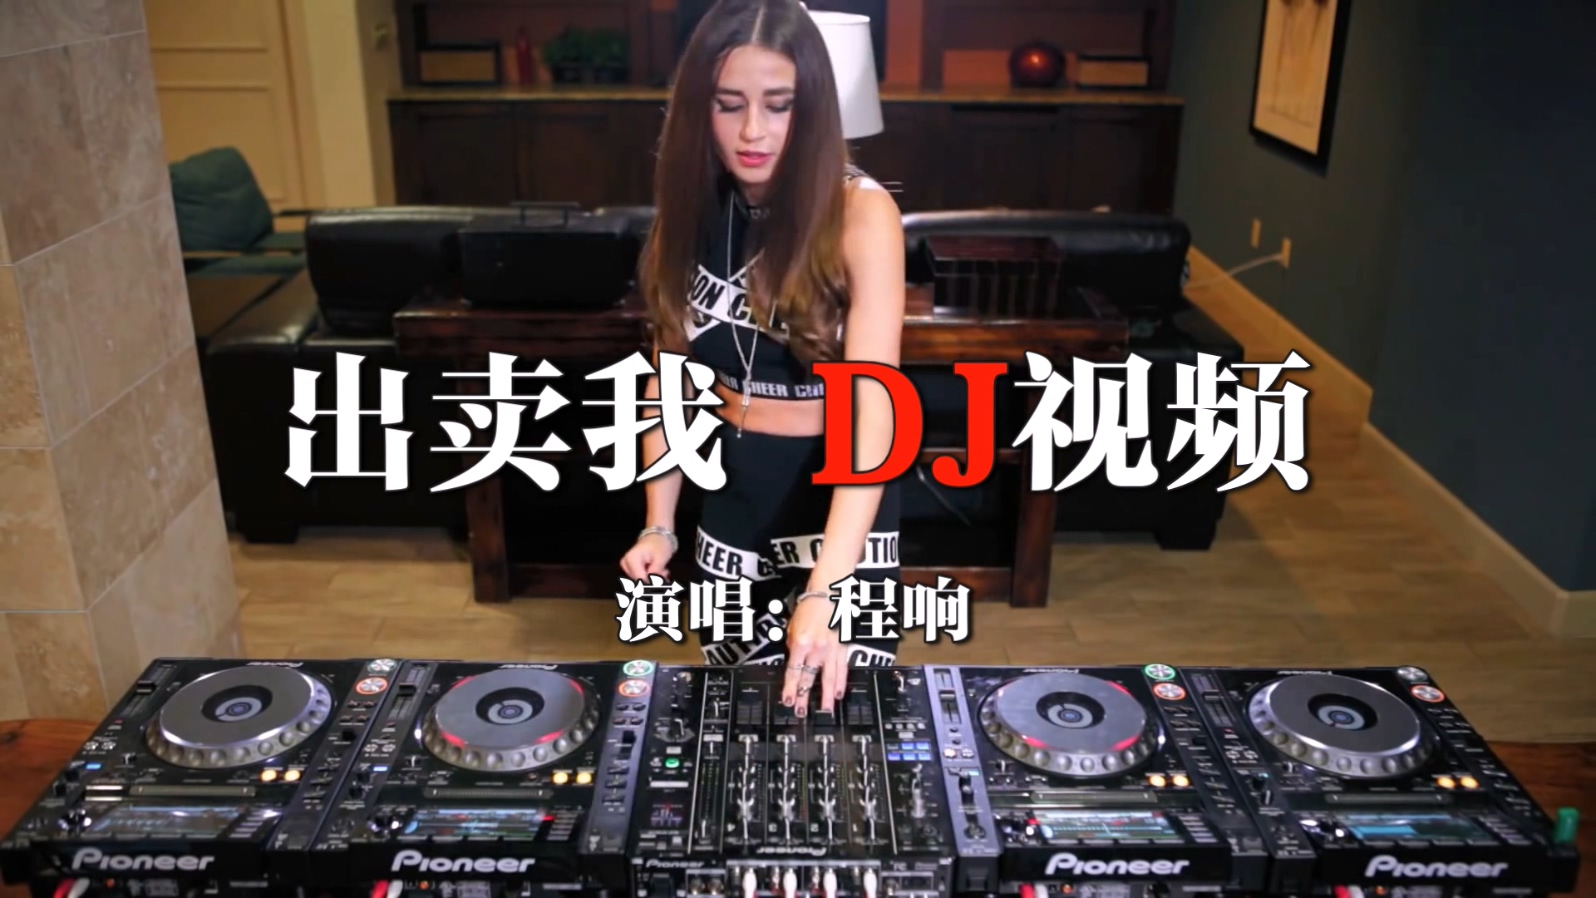 美女DJ打碟DJ视频中文舞曲 - 程响 - 出卖我